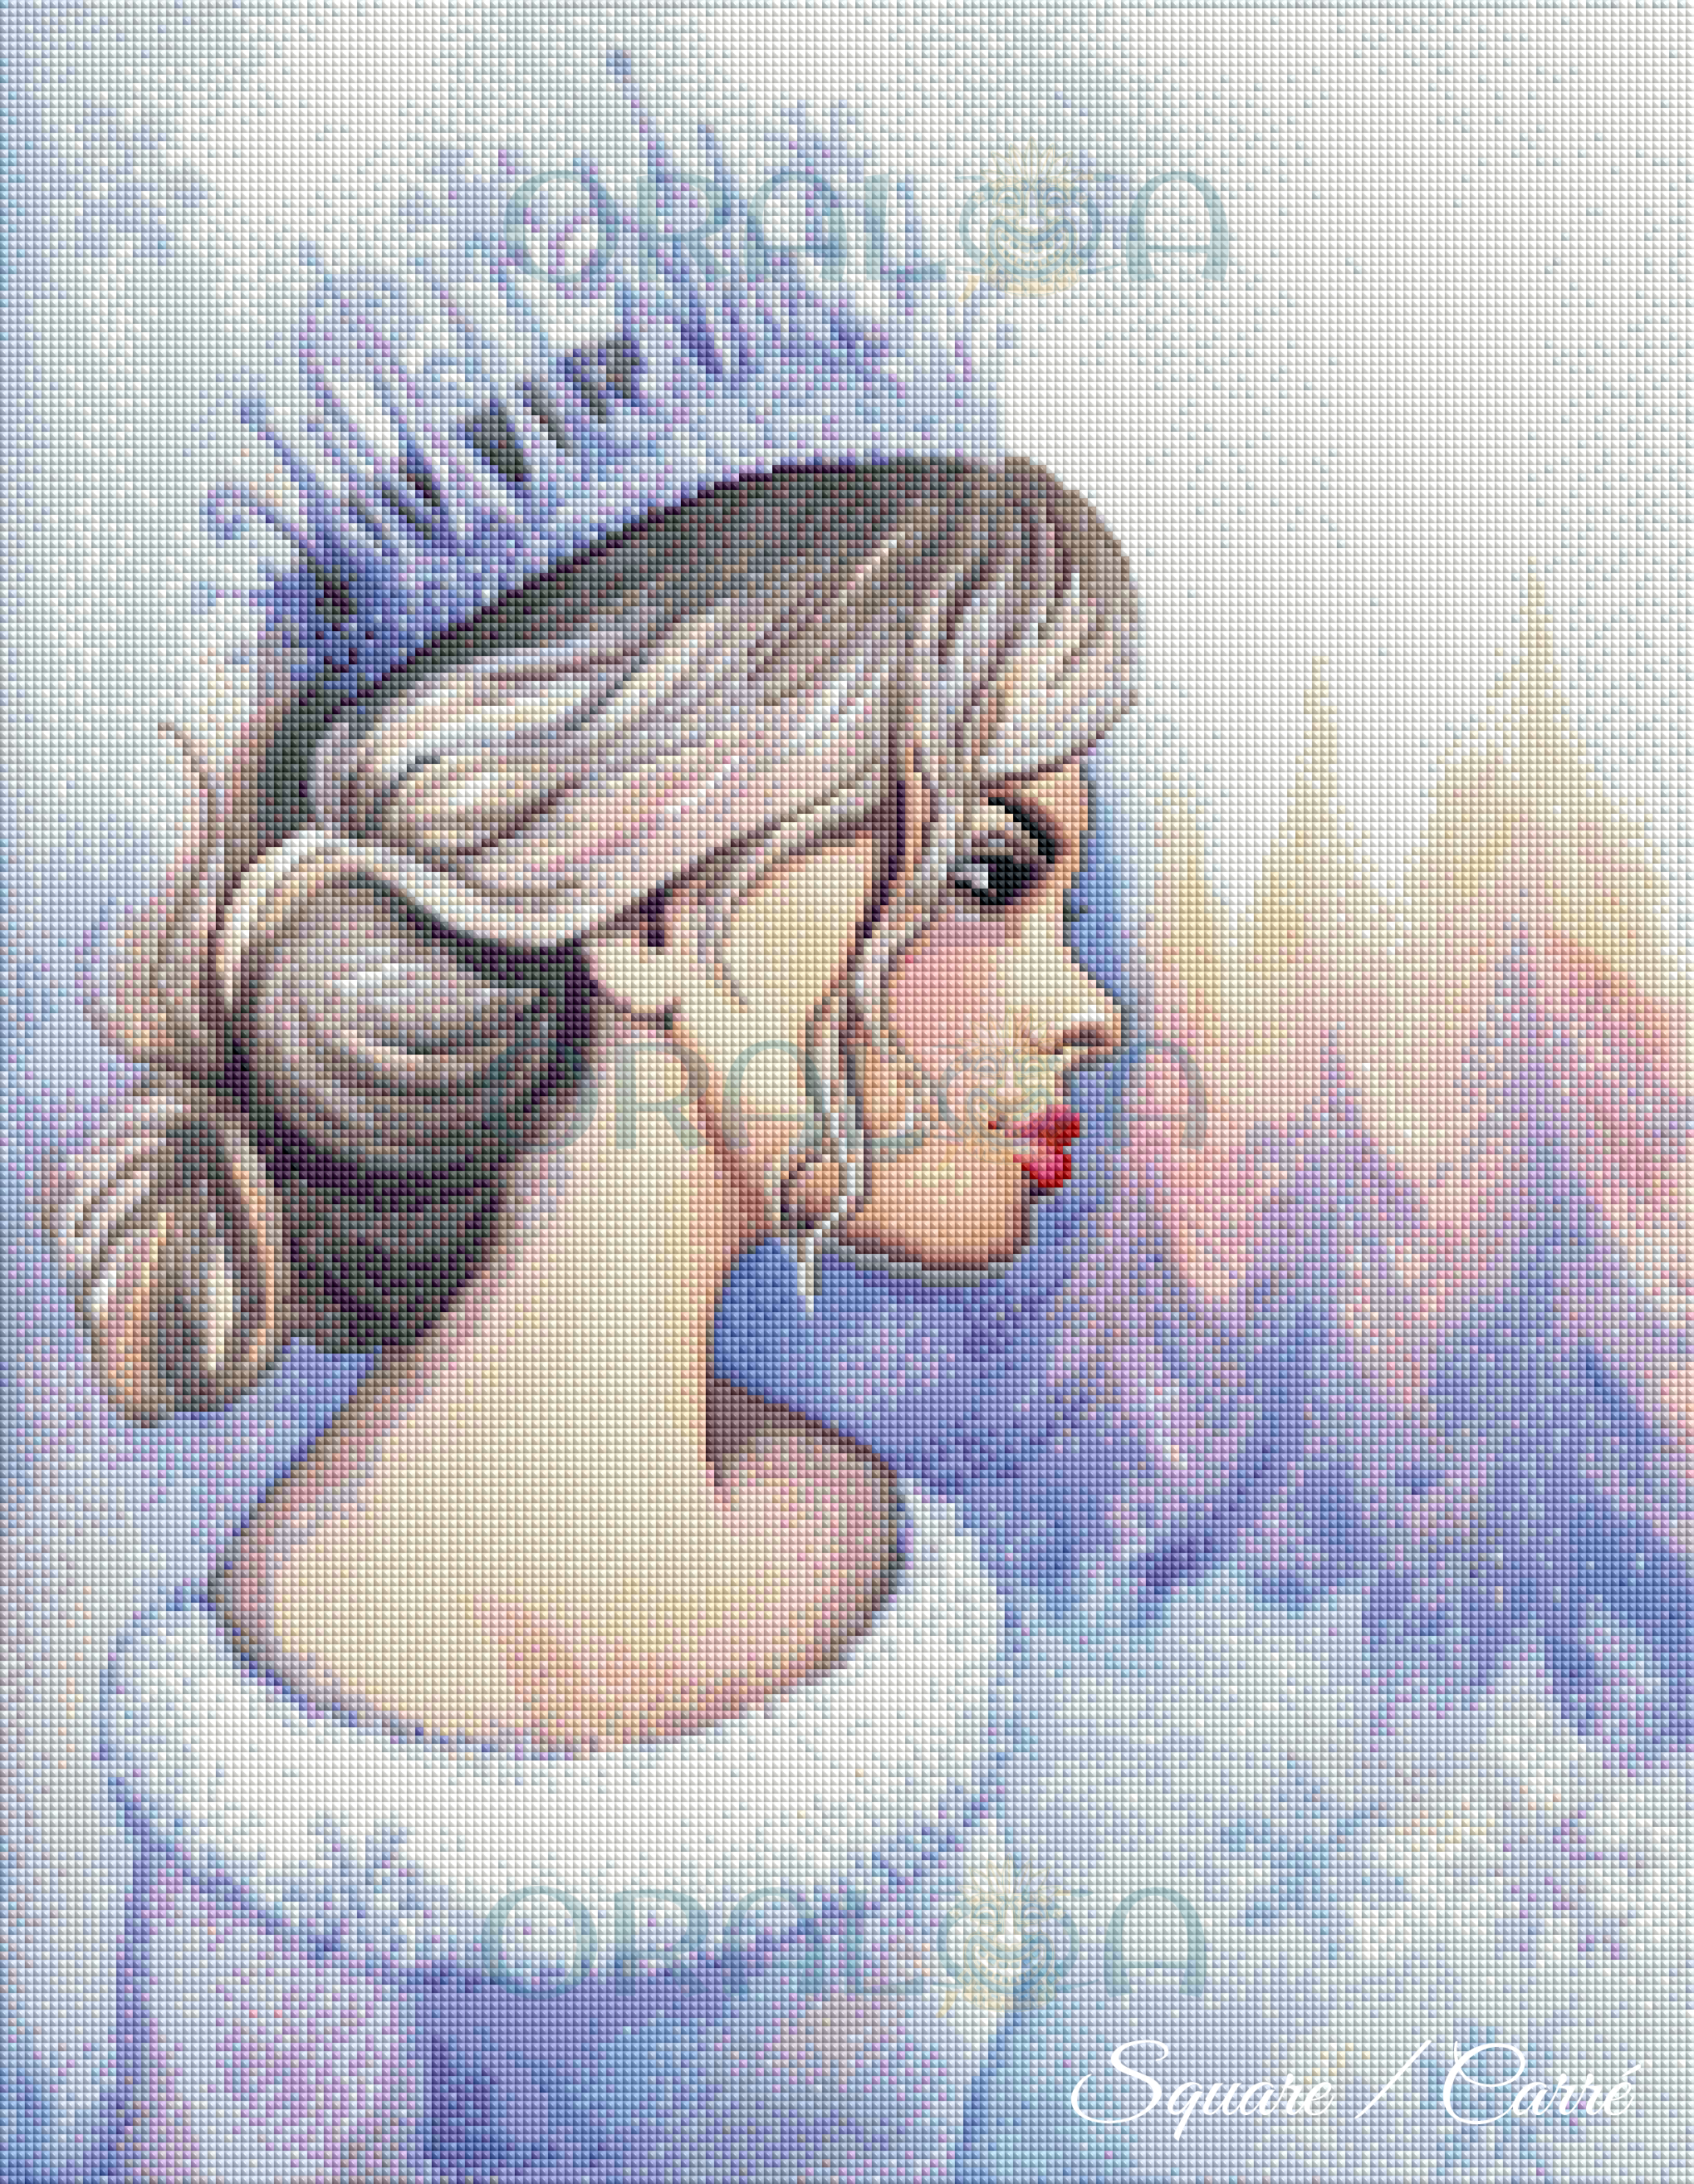 Winter Queen Oraloa.